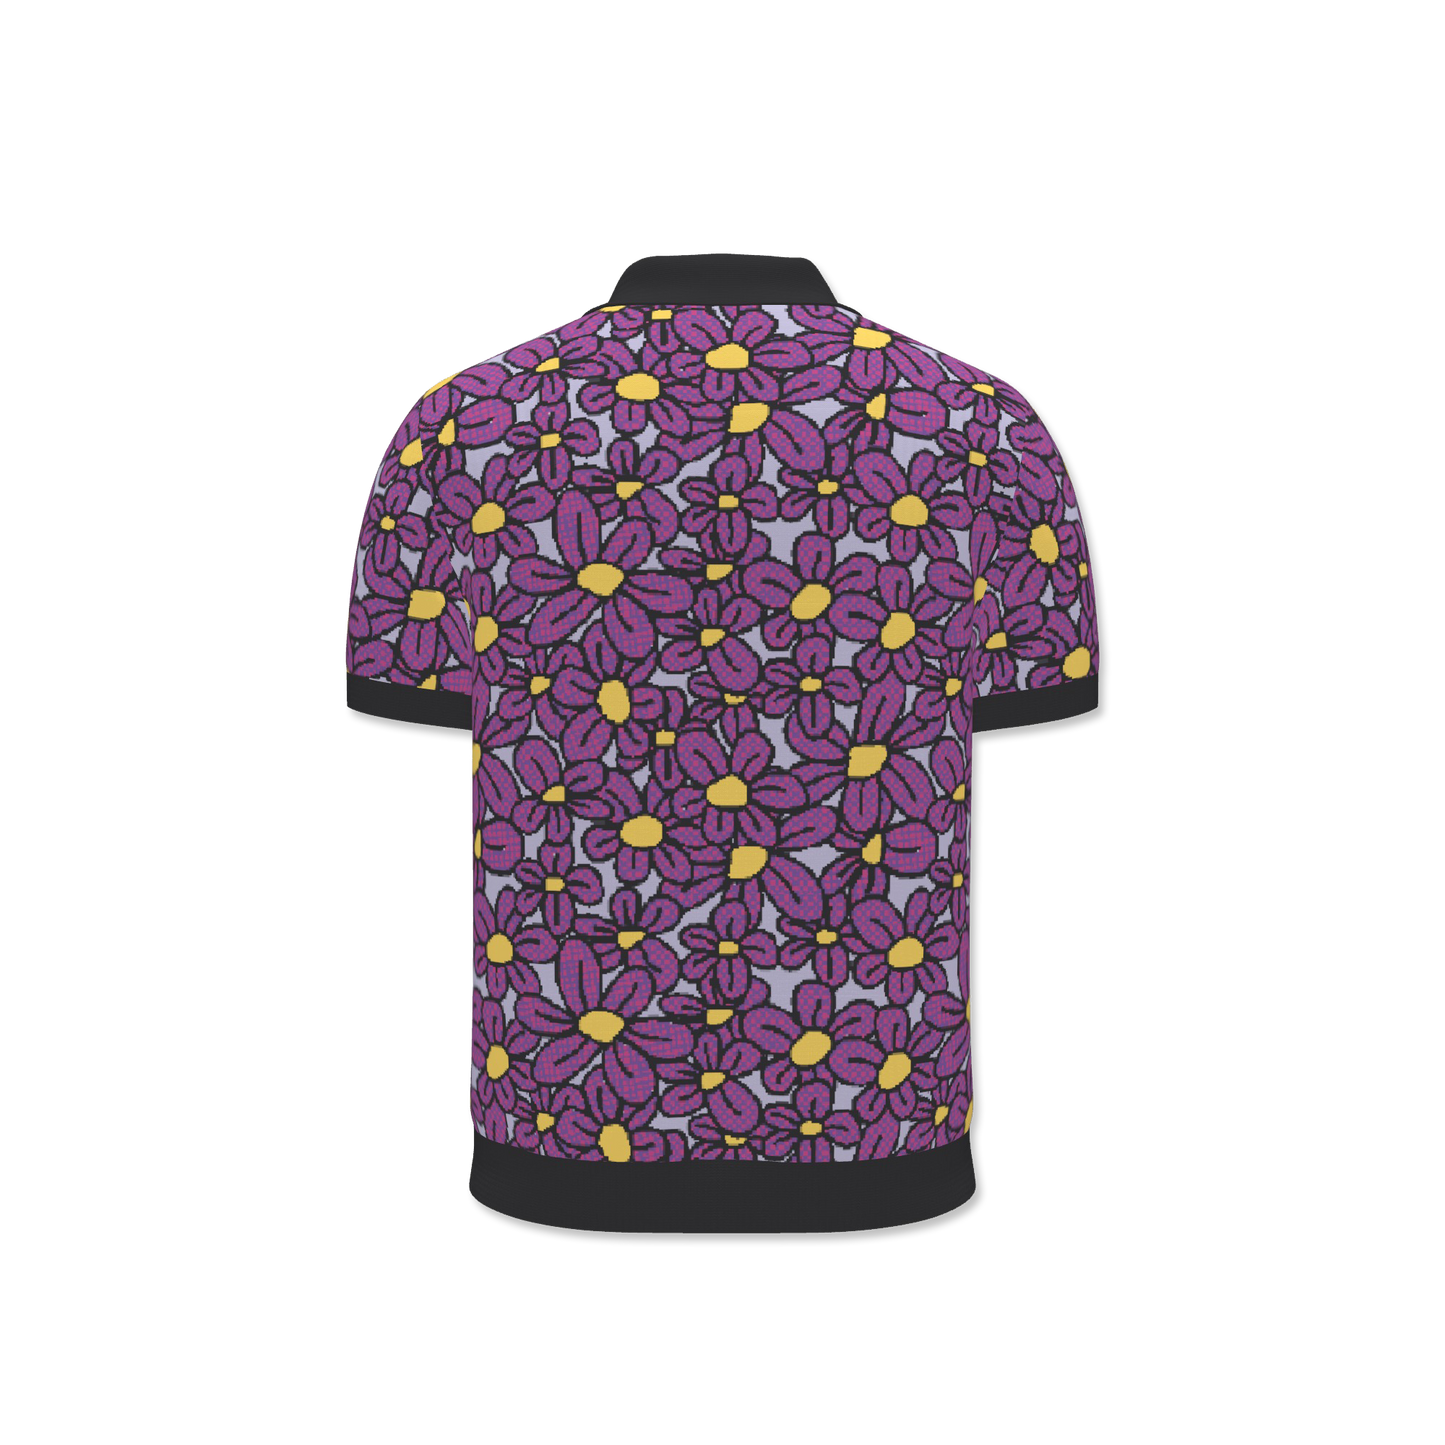 Flower Pop! Lilac Mens V-Neck Polo Shirt by Studio Ten Design